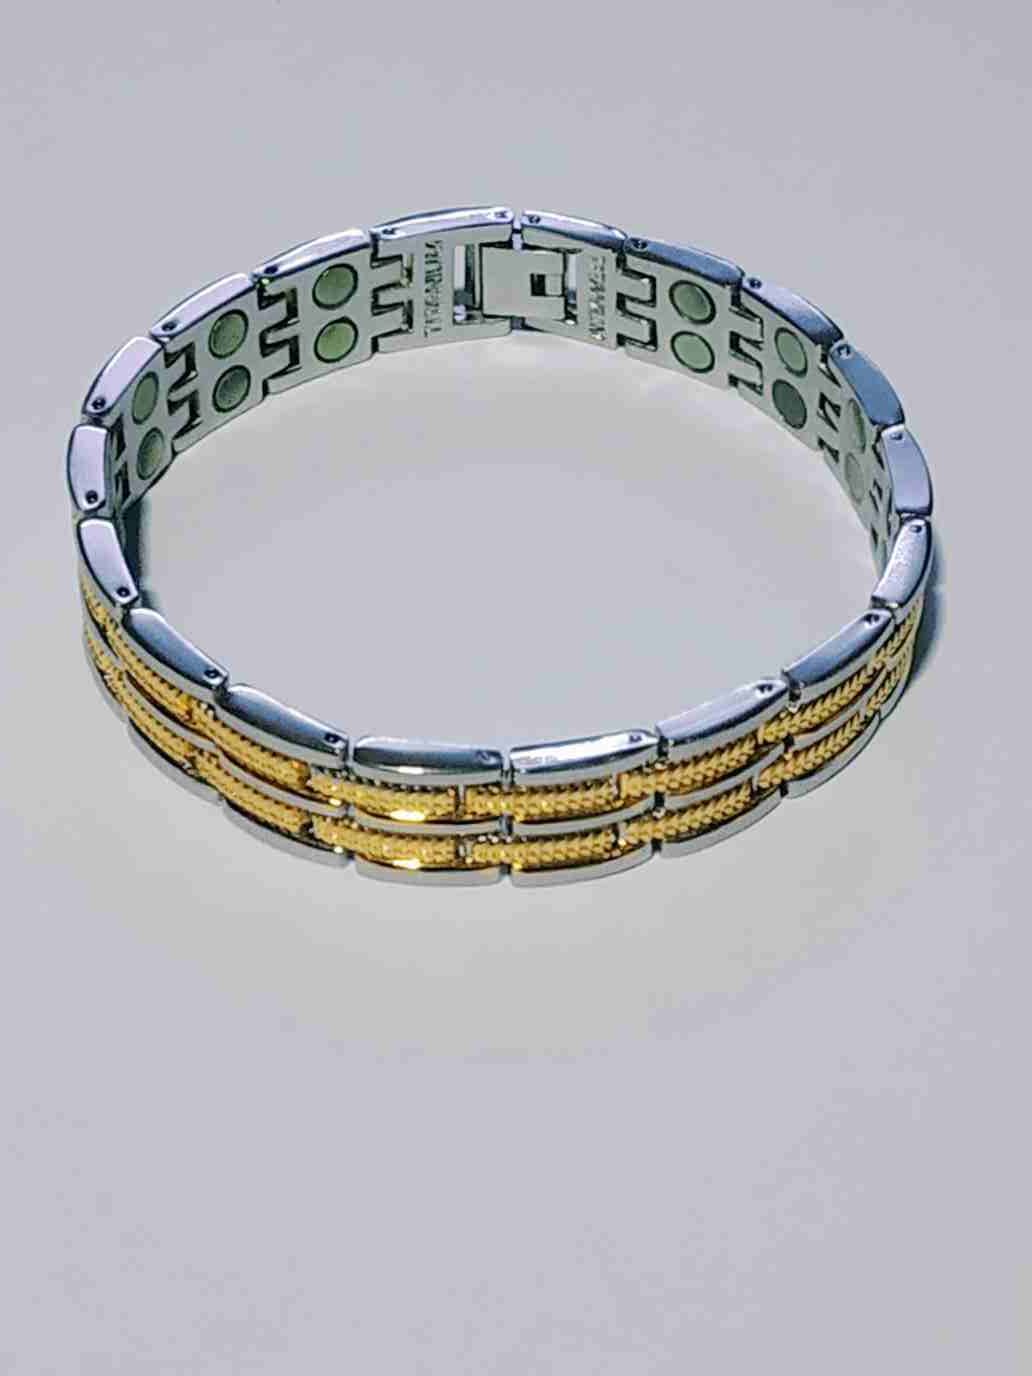 New Magnetic Energy Bracelet For Men| Alibaba.com